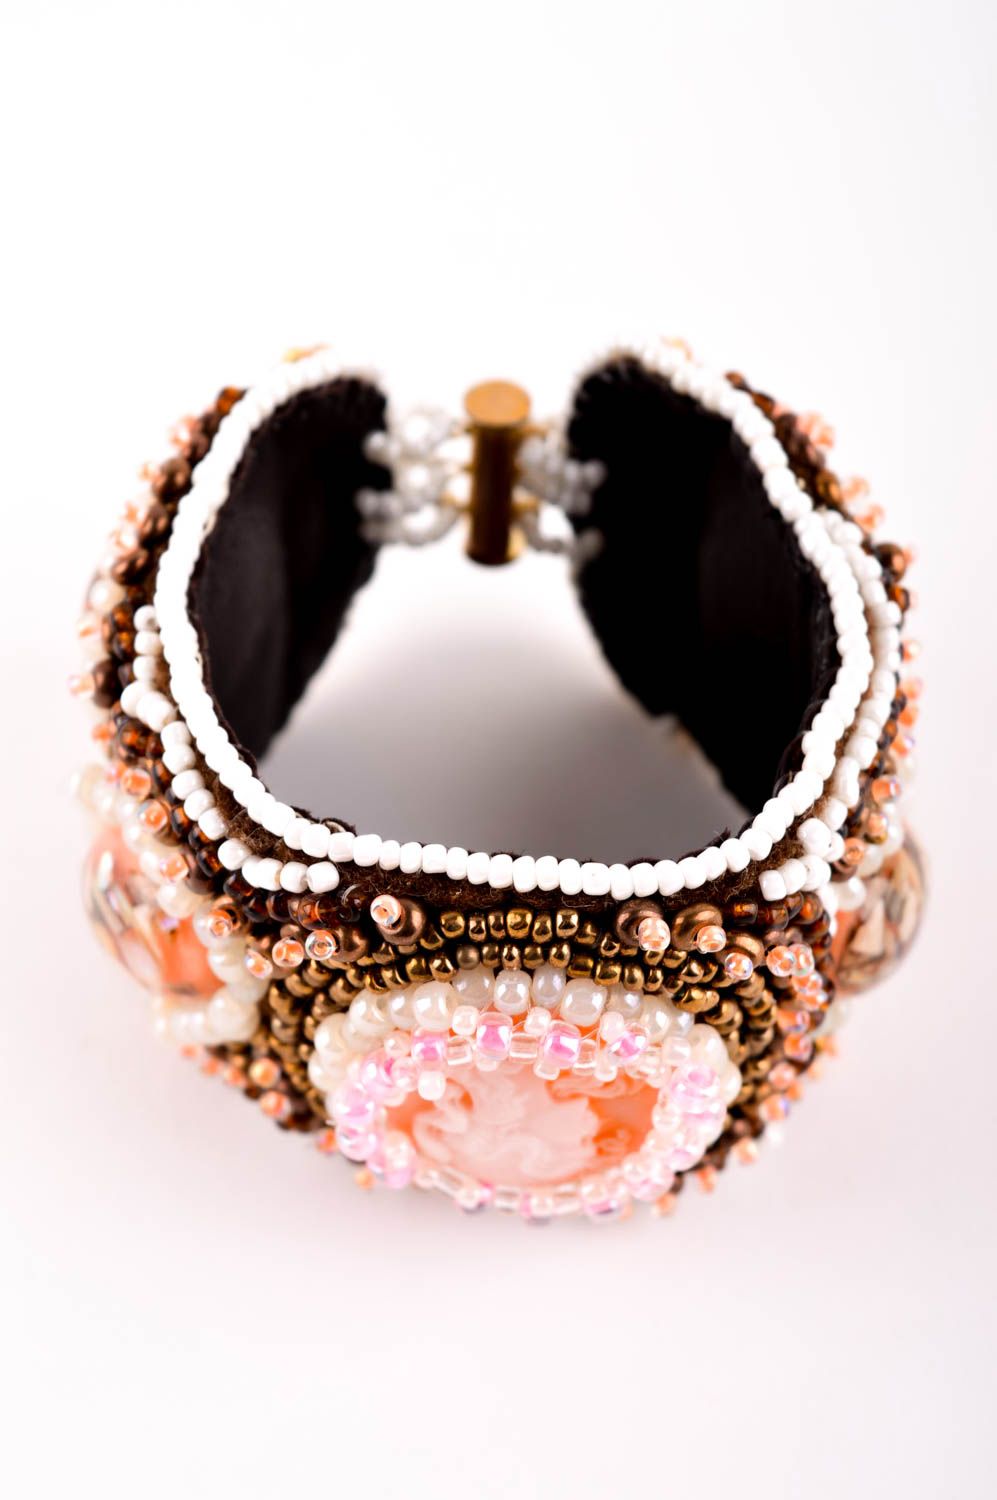 Handmade bracelet beads bracelet unusual bracelet for girls gift ideas photo 4